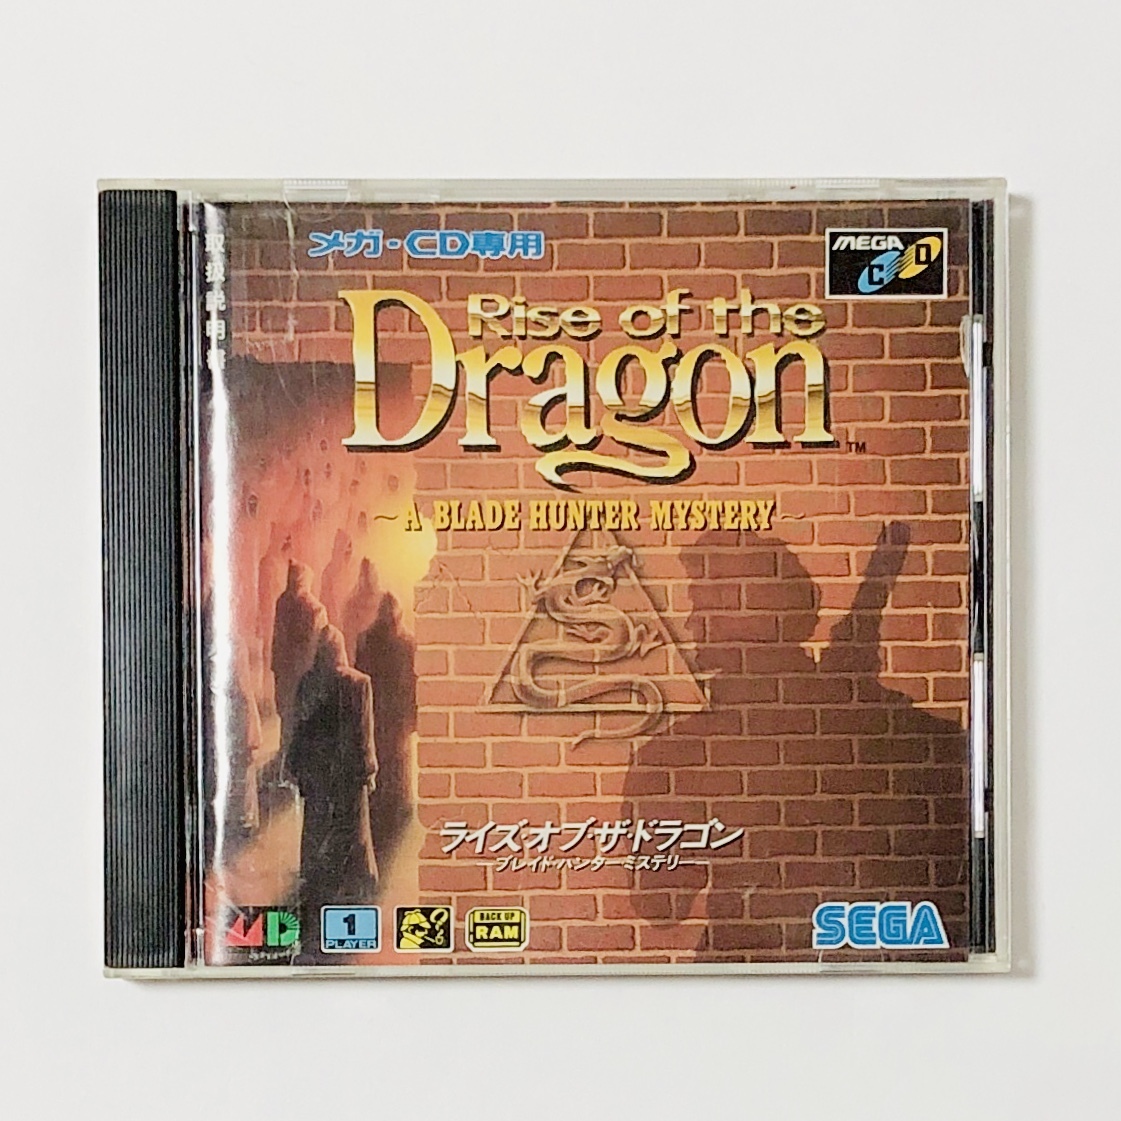 セガ メガドライブ メガCD ライズ・オブ・ザ・ドラゴン 痛みあり 動作未確認 Sega MegaCD Rise of the Dragon: A Blade Hunter Mystery CIB_画像2